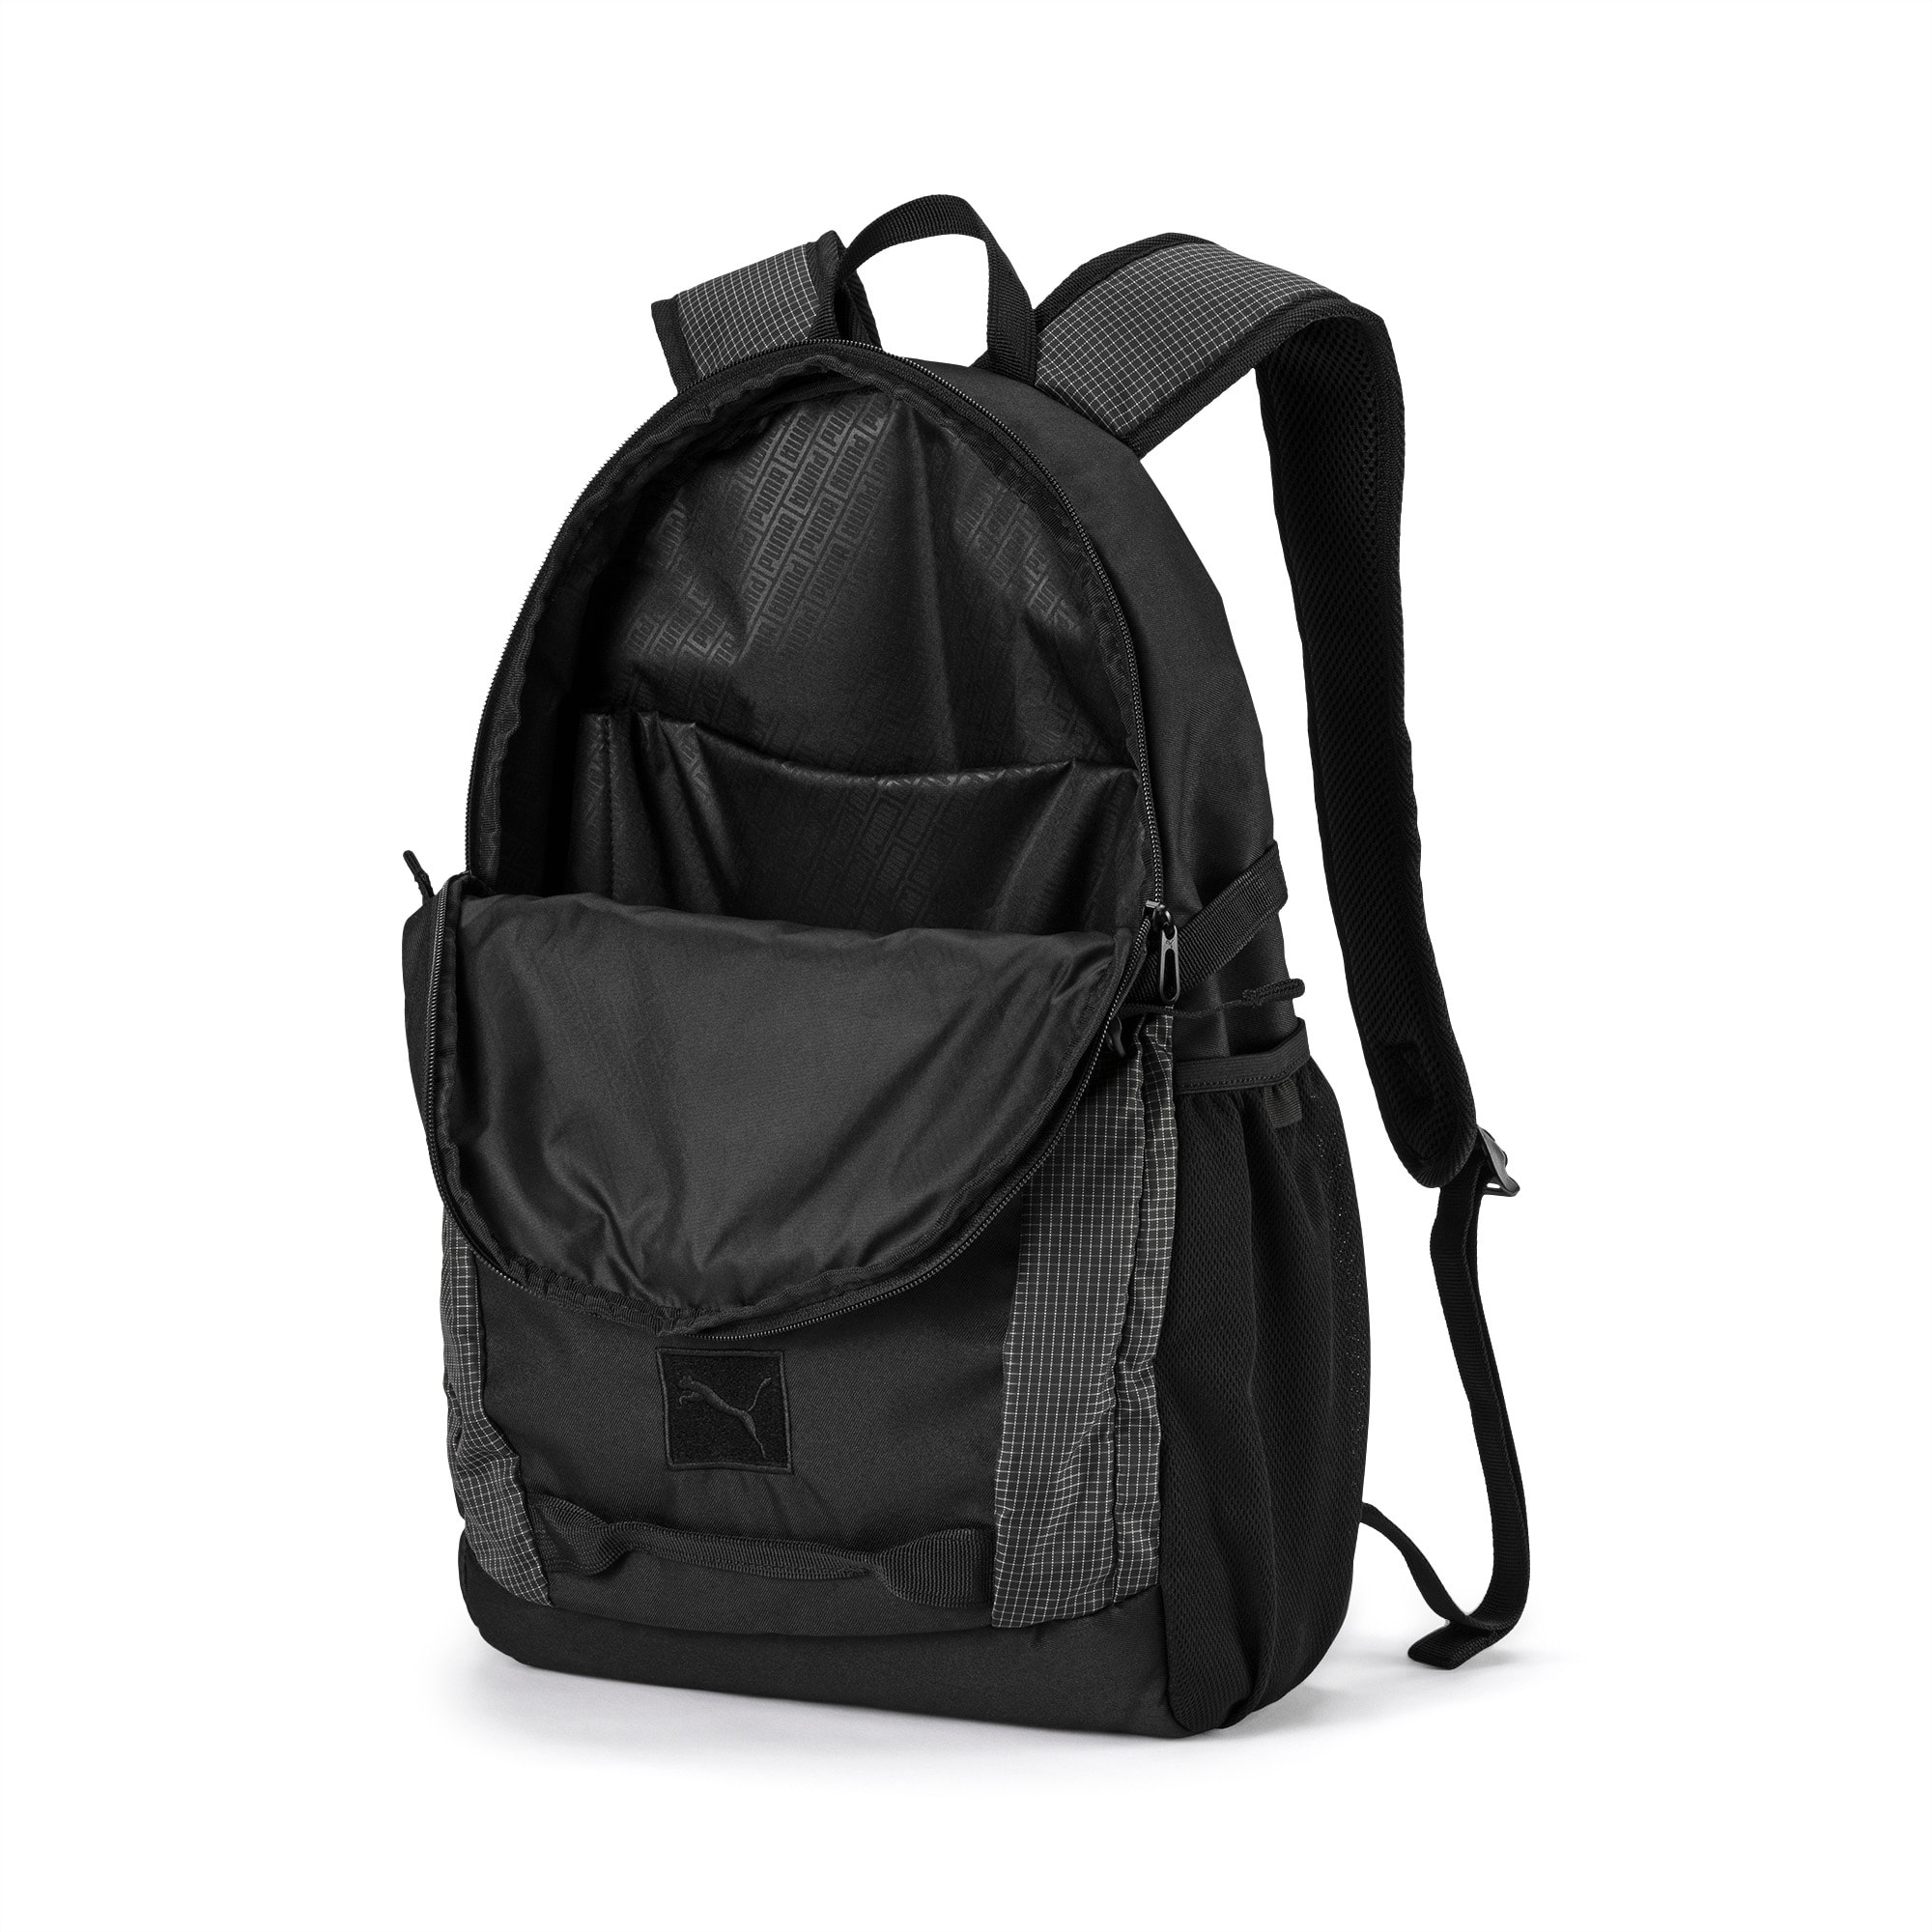 puma bmw backpack 2014